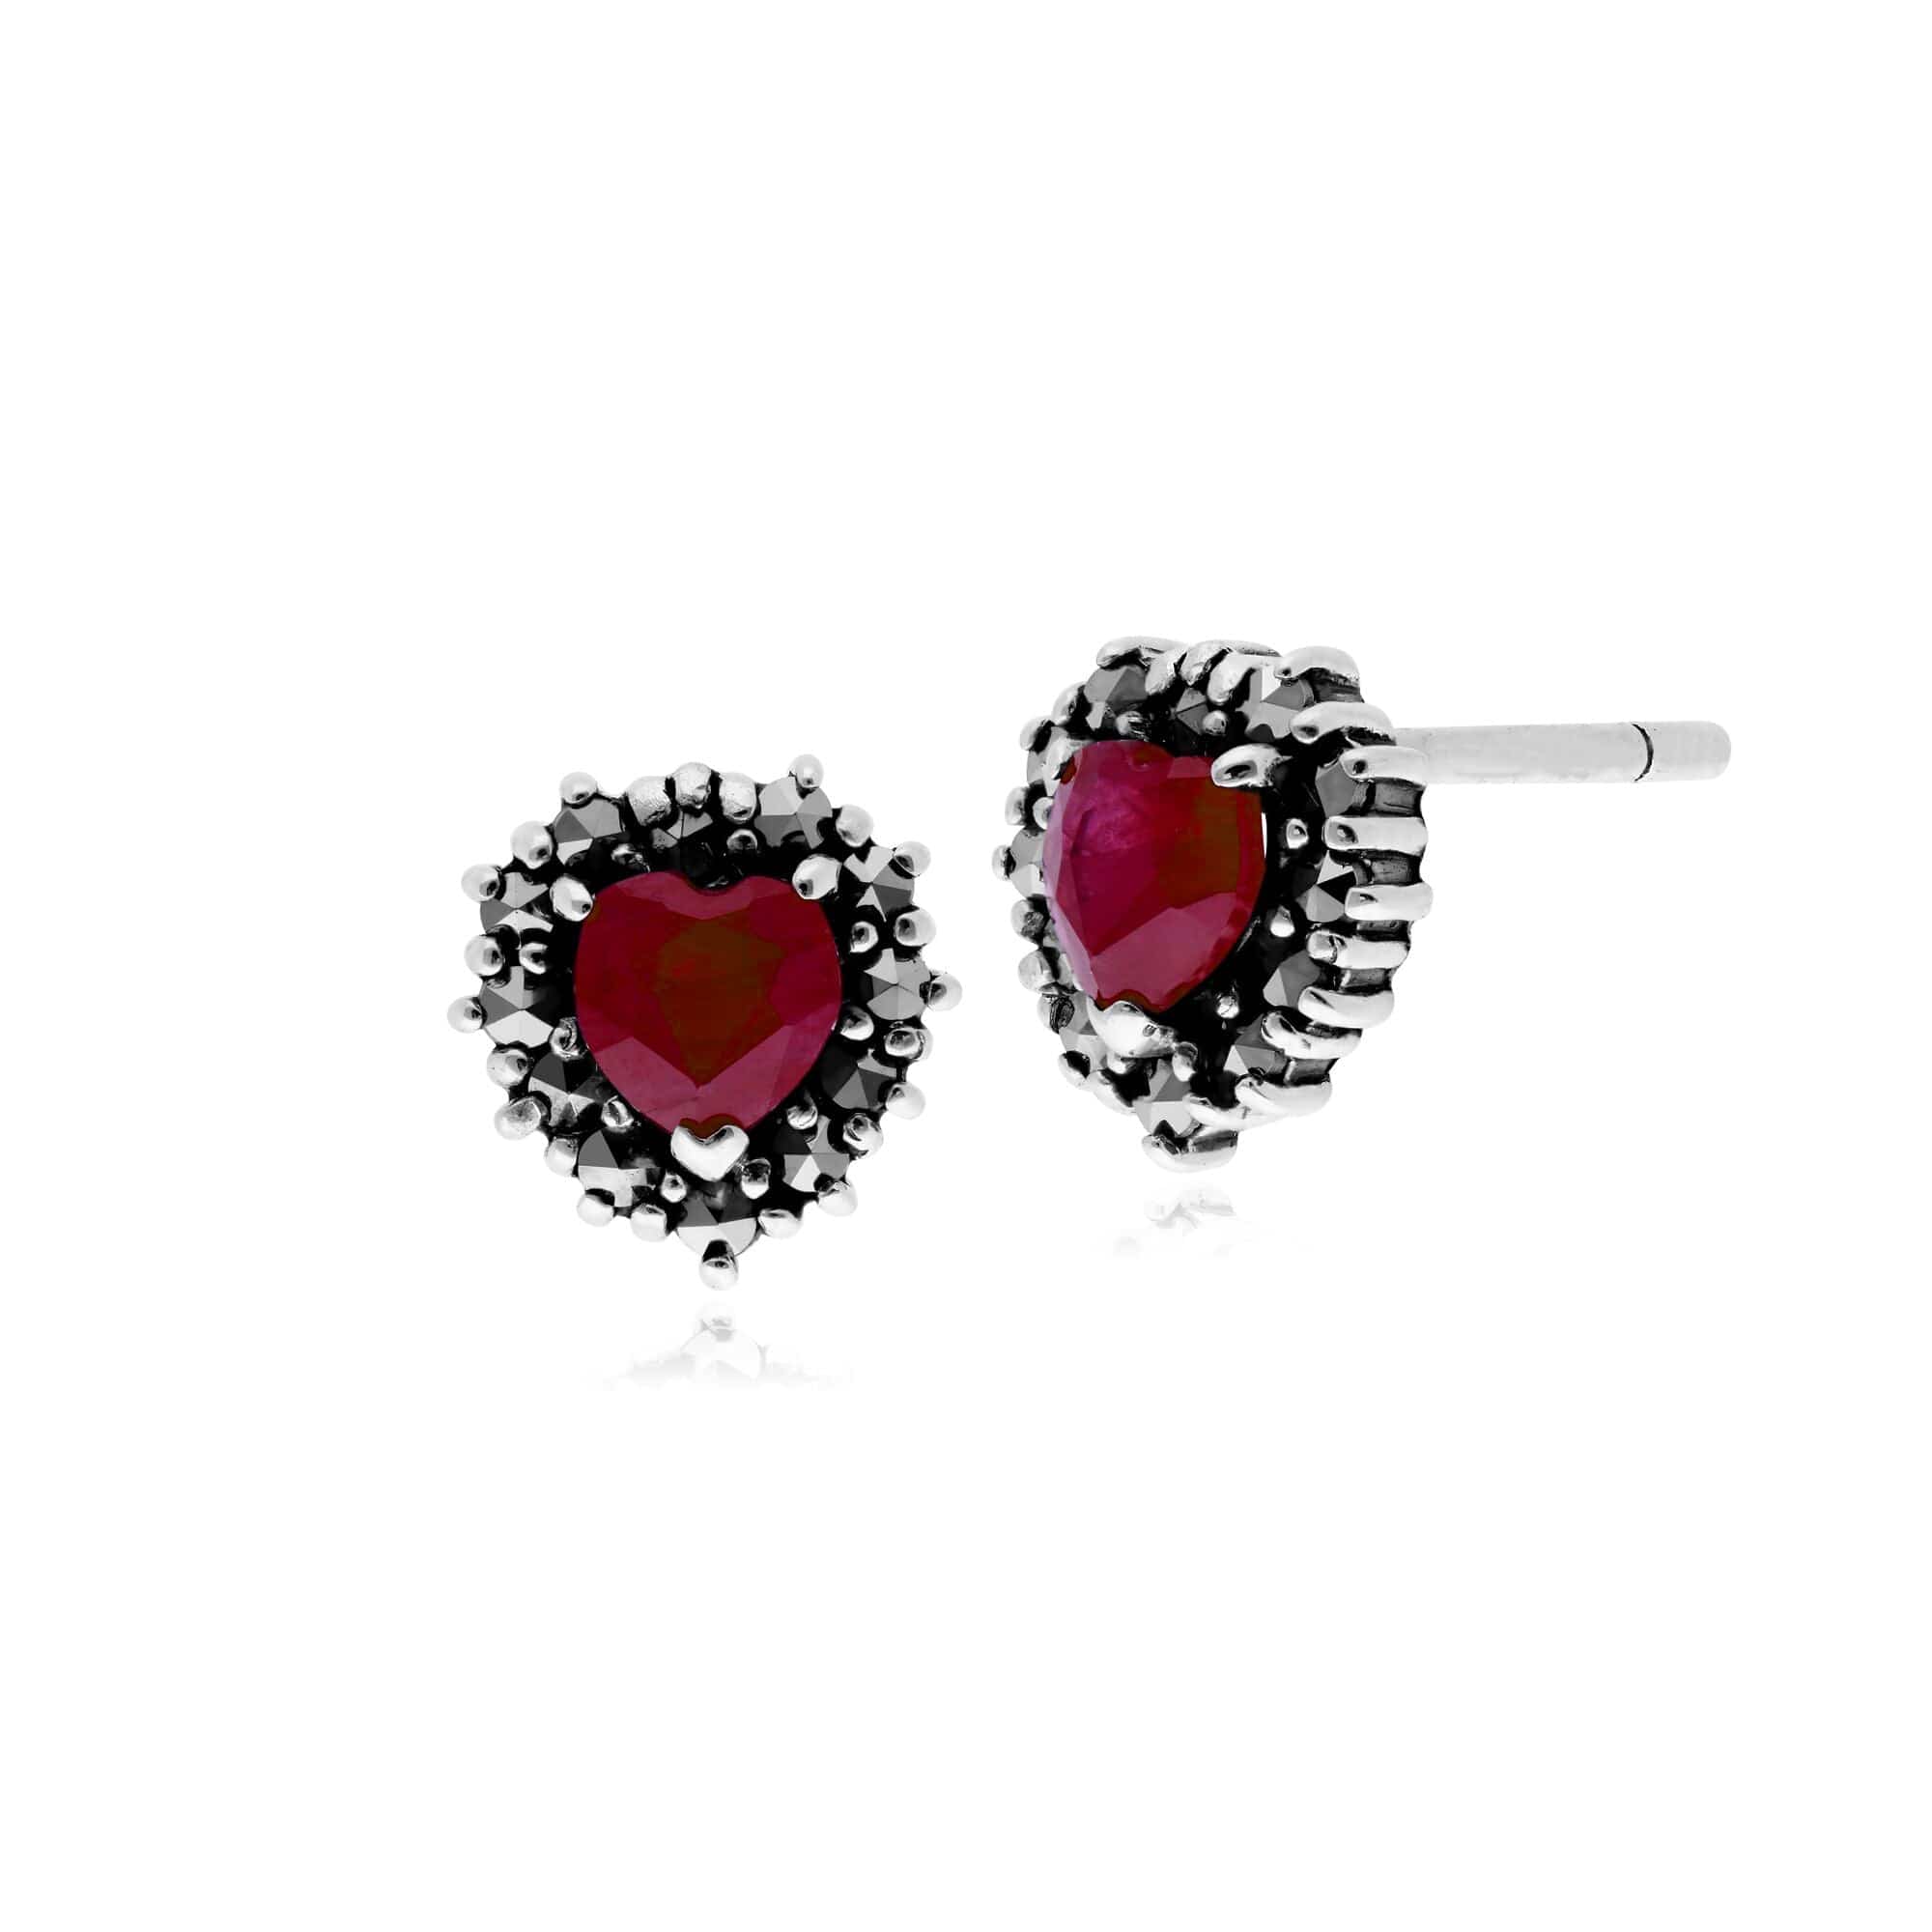 Gemondo Sterling Silver Ruby & Marcasite Heart Stud Earrings - Gemondo